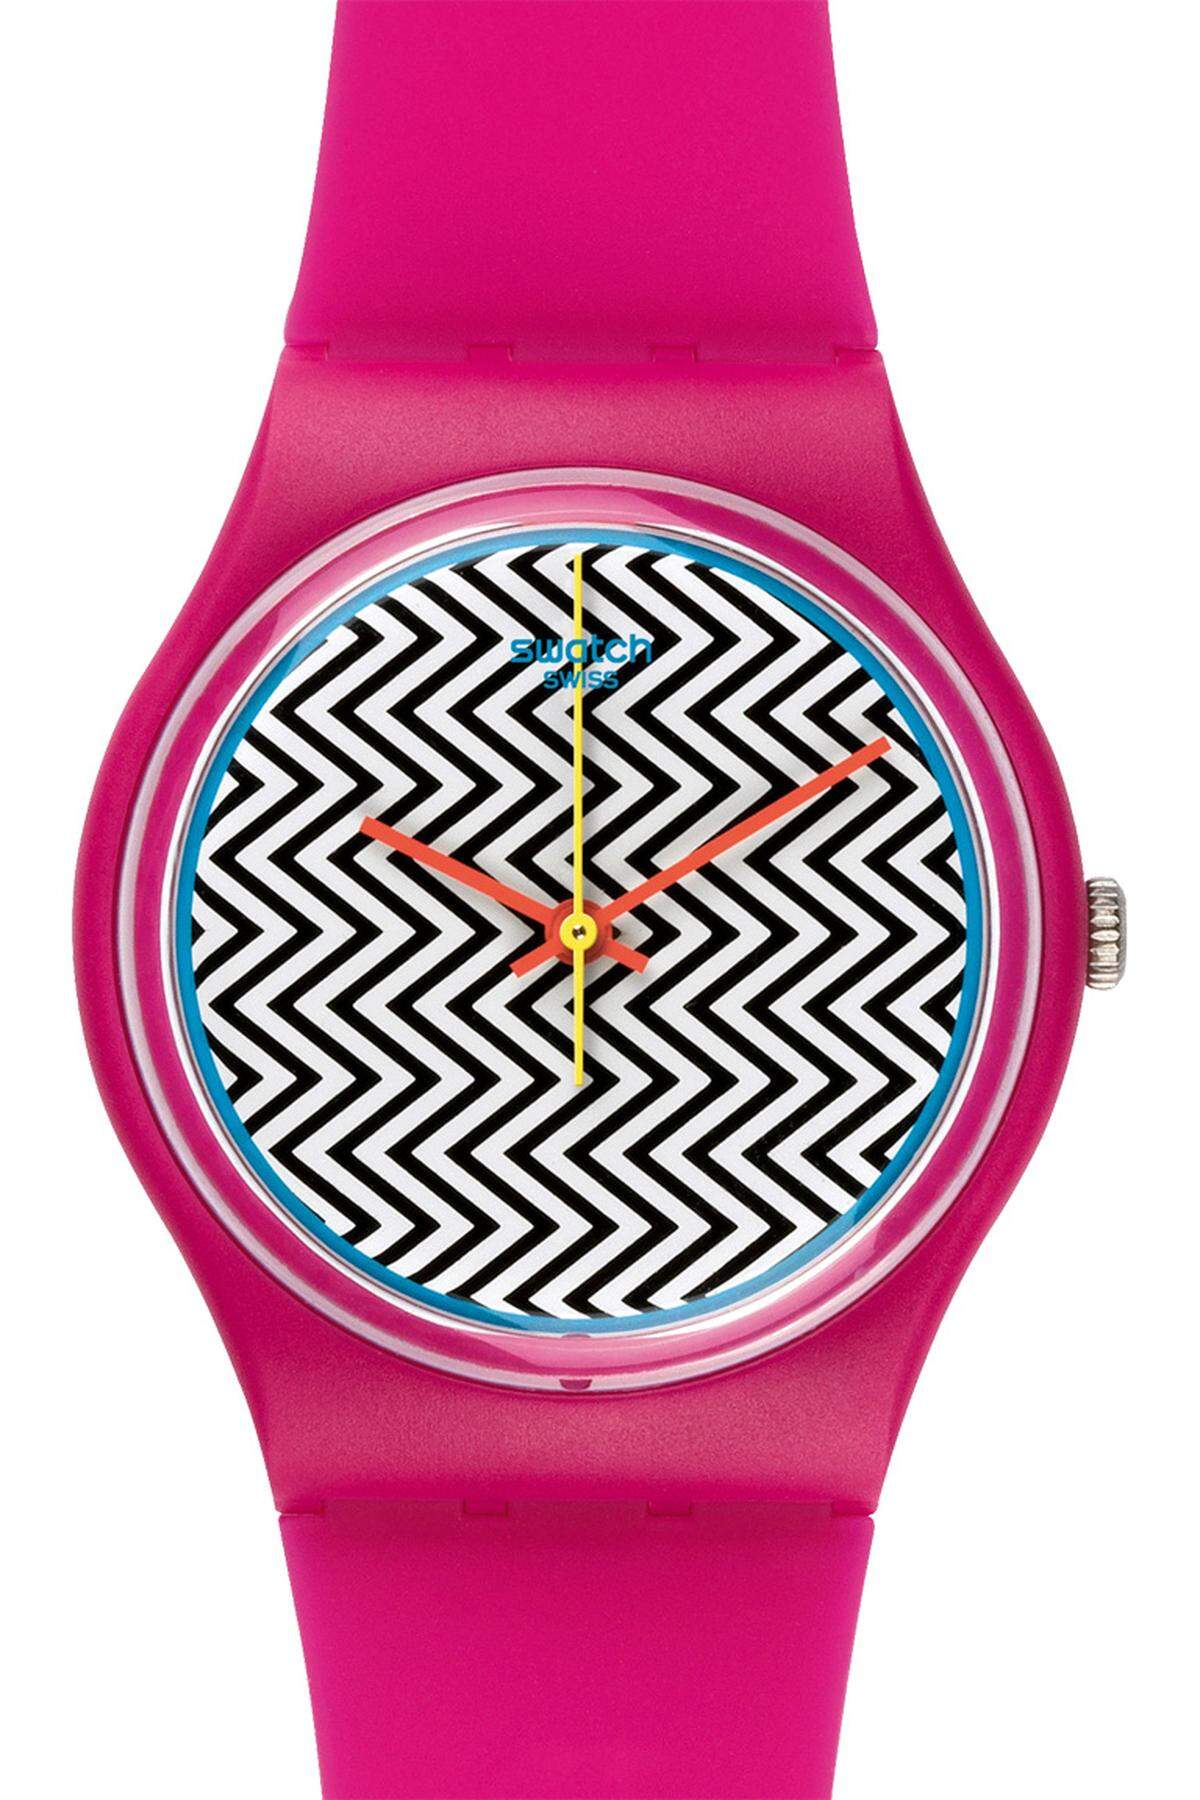 Swatch „Pink Fuzz“. Das wird wohl der knallige Revoluzzer unter den Spring-Summer-Modellen. Erhältlich ab Ende März um 45 Euro.